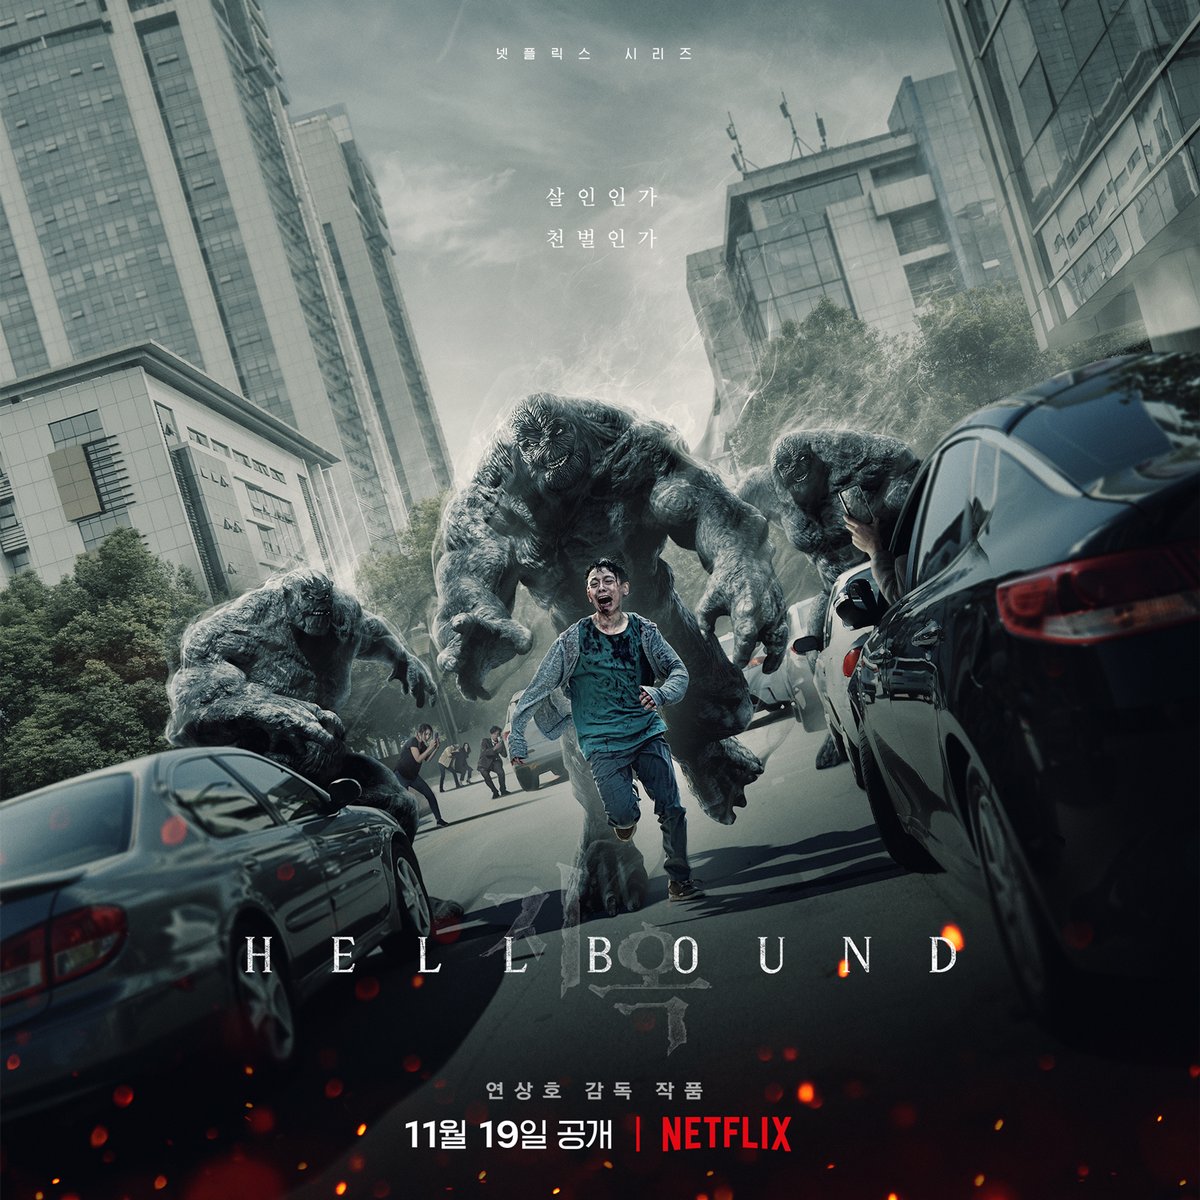 살아있는 지옥으로 변한 세상. 이건 과연 살인일까요, 신의 심판일까요? ‘지옥’을 만날 시간, 11월 19일입니다.

#지옥 #Hellbound #넷플릭스 #Netflix